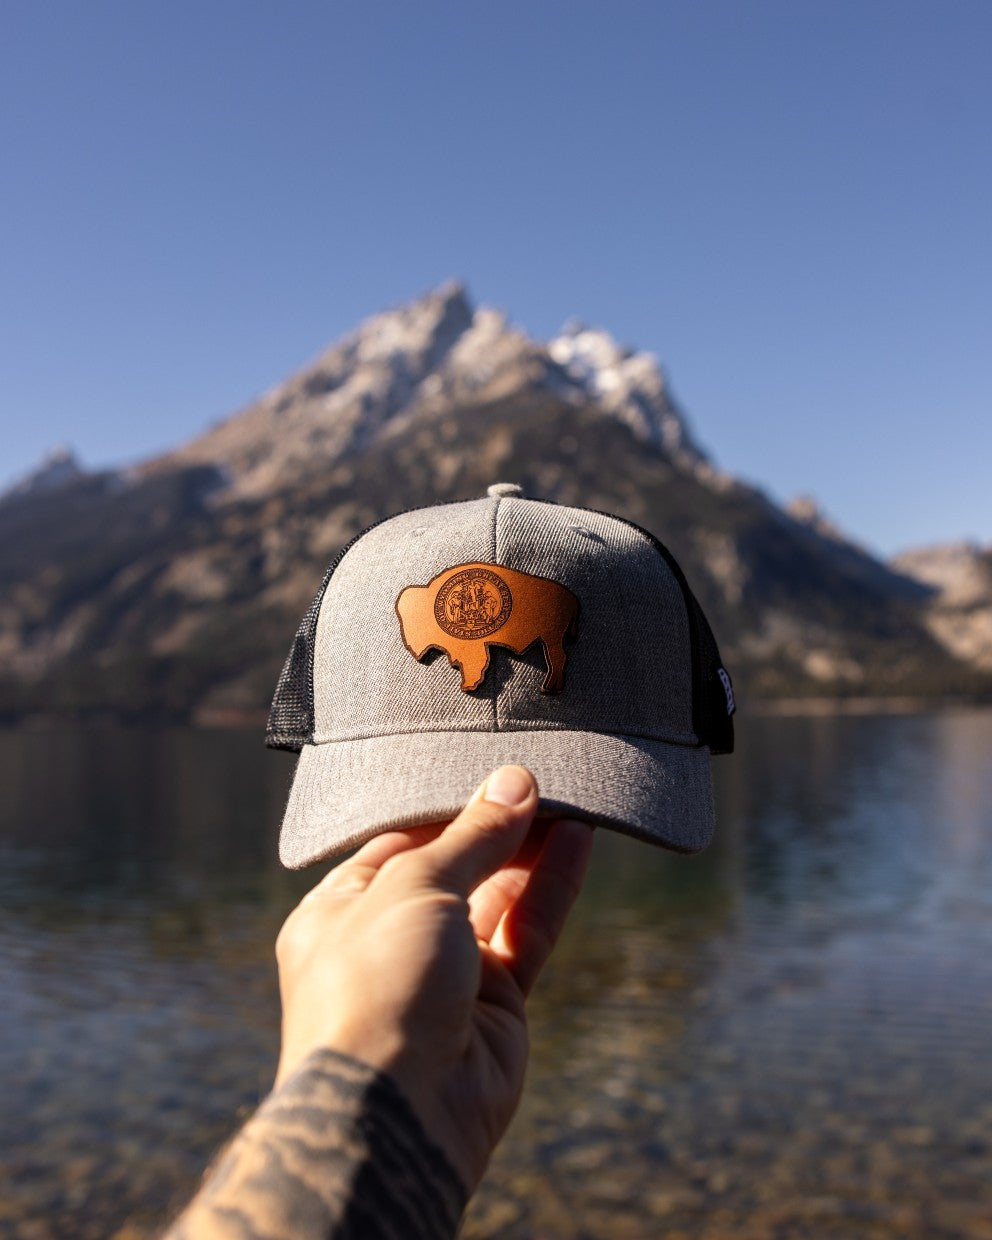 Montana State Hat at a lake